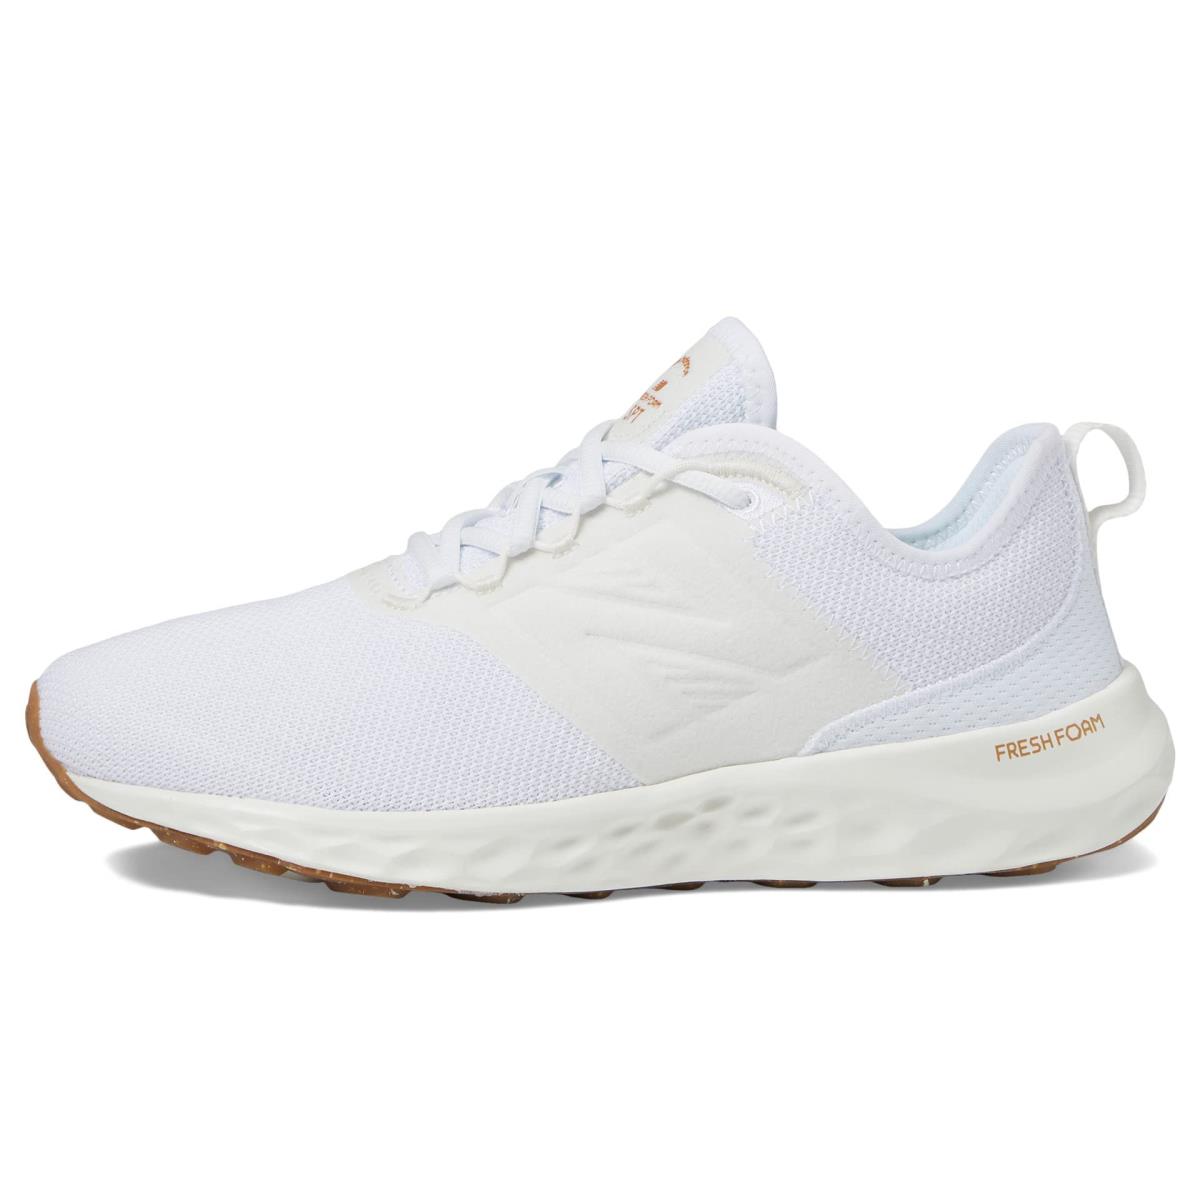 New Balance Women`s Fresh Foam Spt V4 Running Shoe White/White